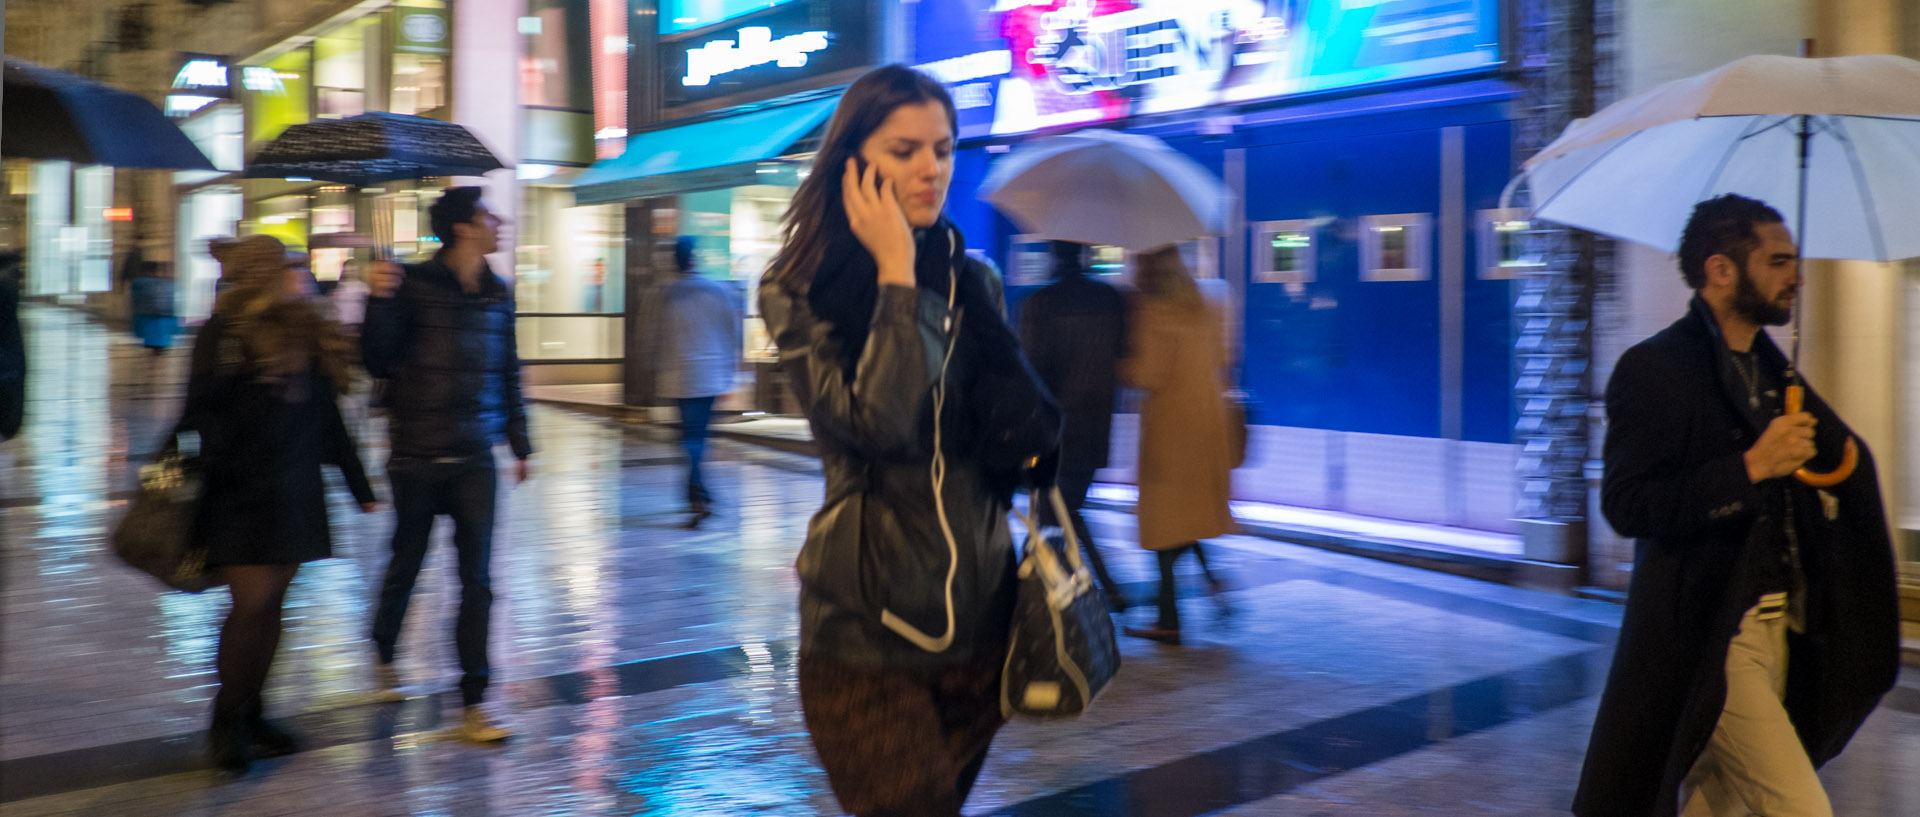 Femme avec son téléphone portable, sous la pluie, avenue des Champs Elysées, à Paris.